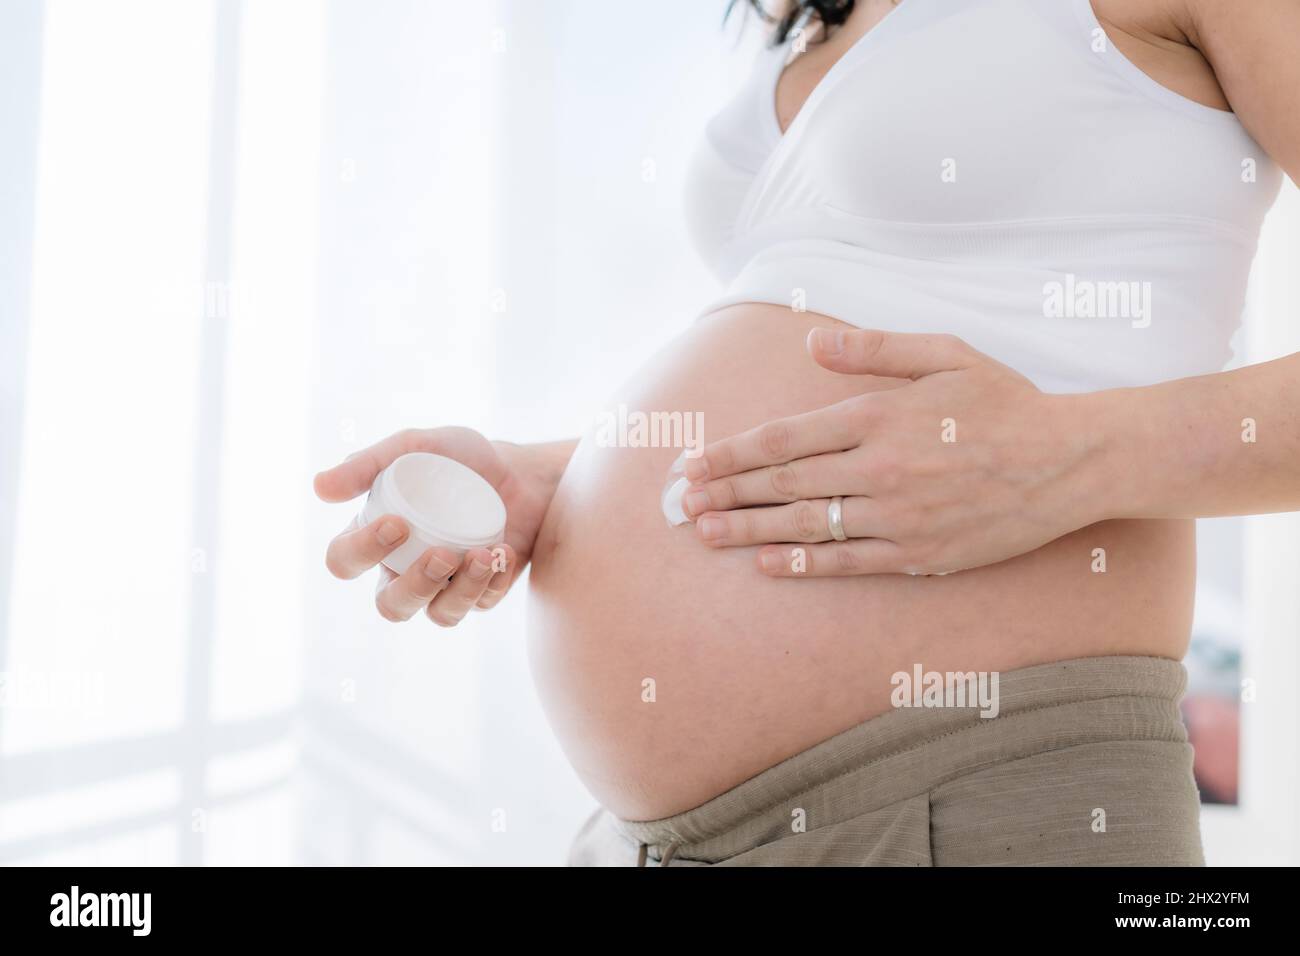 la jeune femme enceinte applique de la crème hydratante sur son ventre pour lisser la peau. Prévention des marques de tension pendant la grossesse. Santé et soins du corps concep Banque D'Images